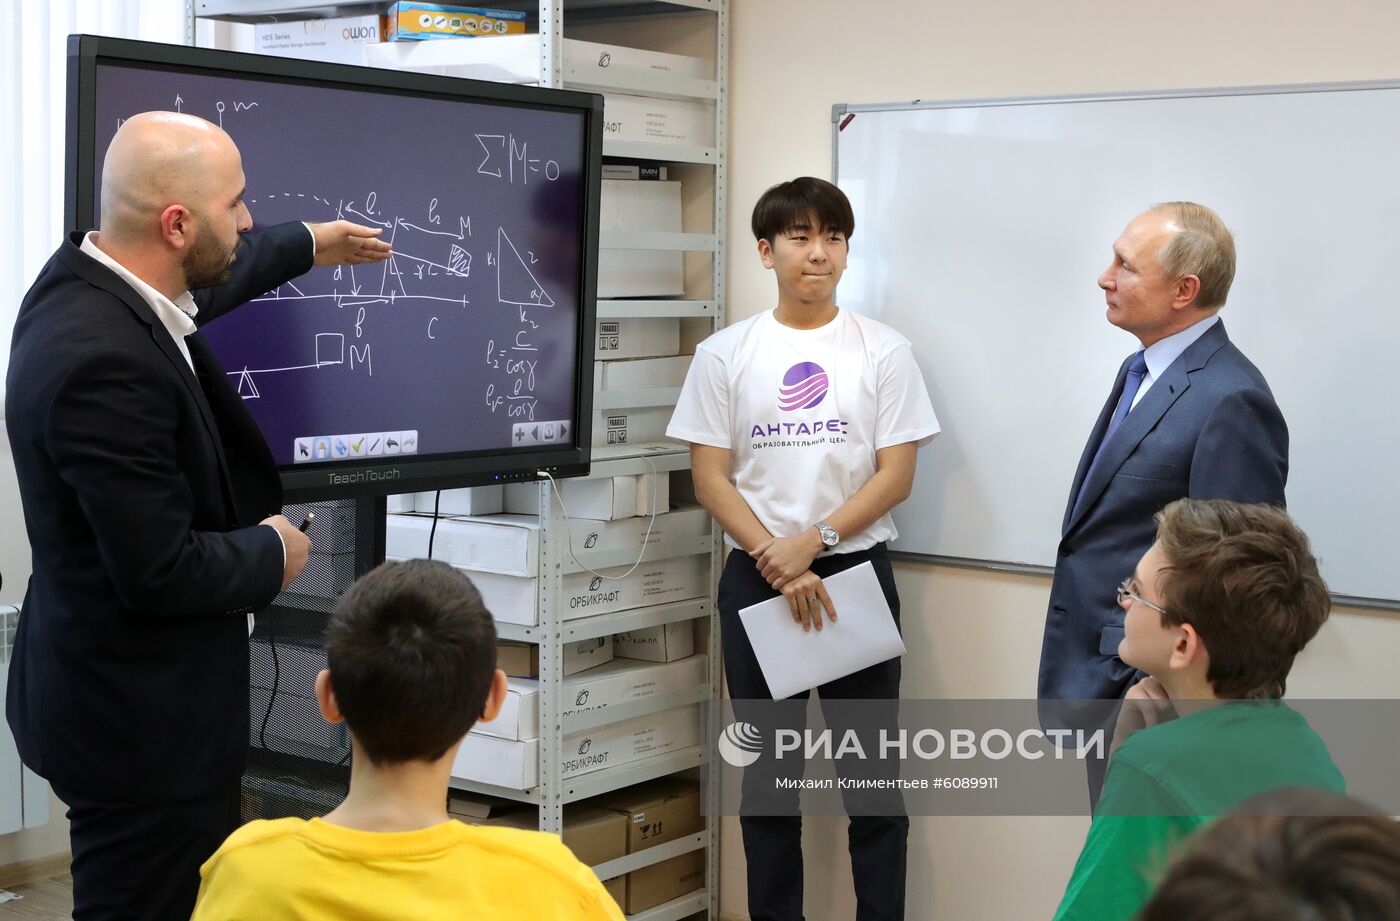 Рабочая поездка президента РФ В. Путина в Кабардино-Балкарию